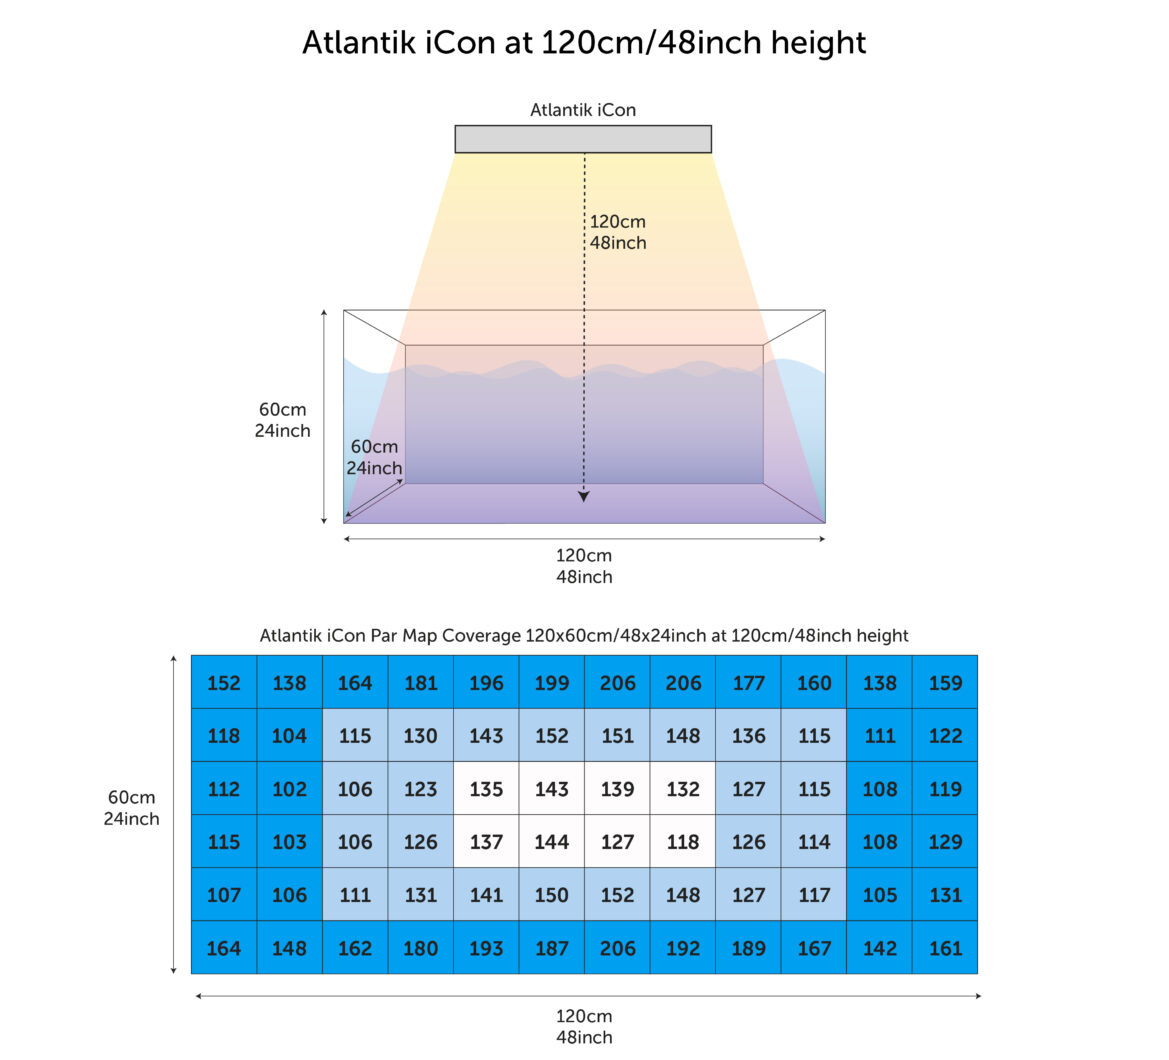 Atlantik_iCon_PAR_aflæsninger_målt_fra_120 cm_af_tanken